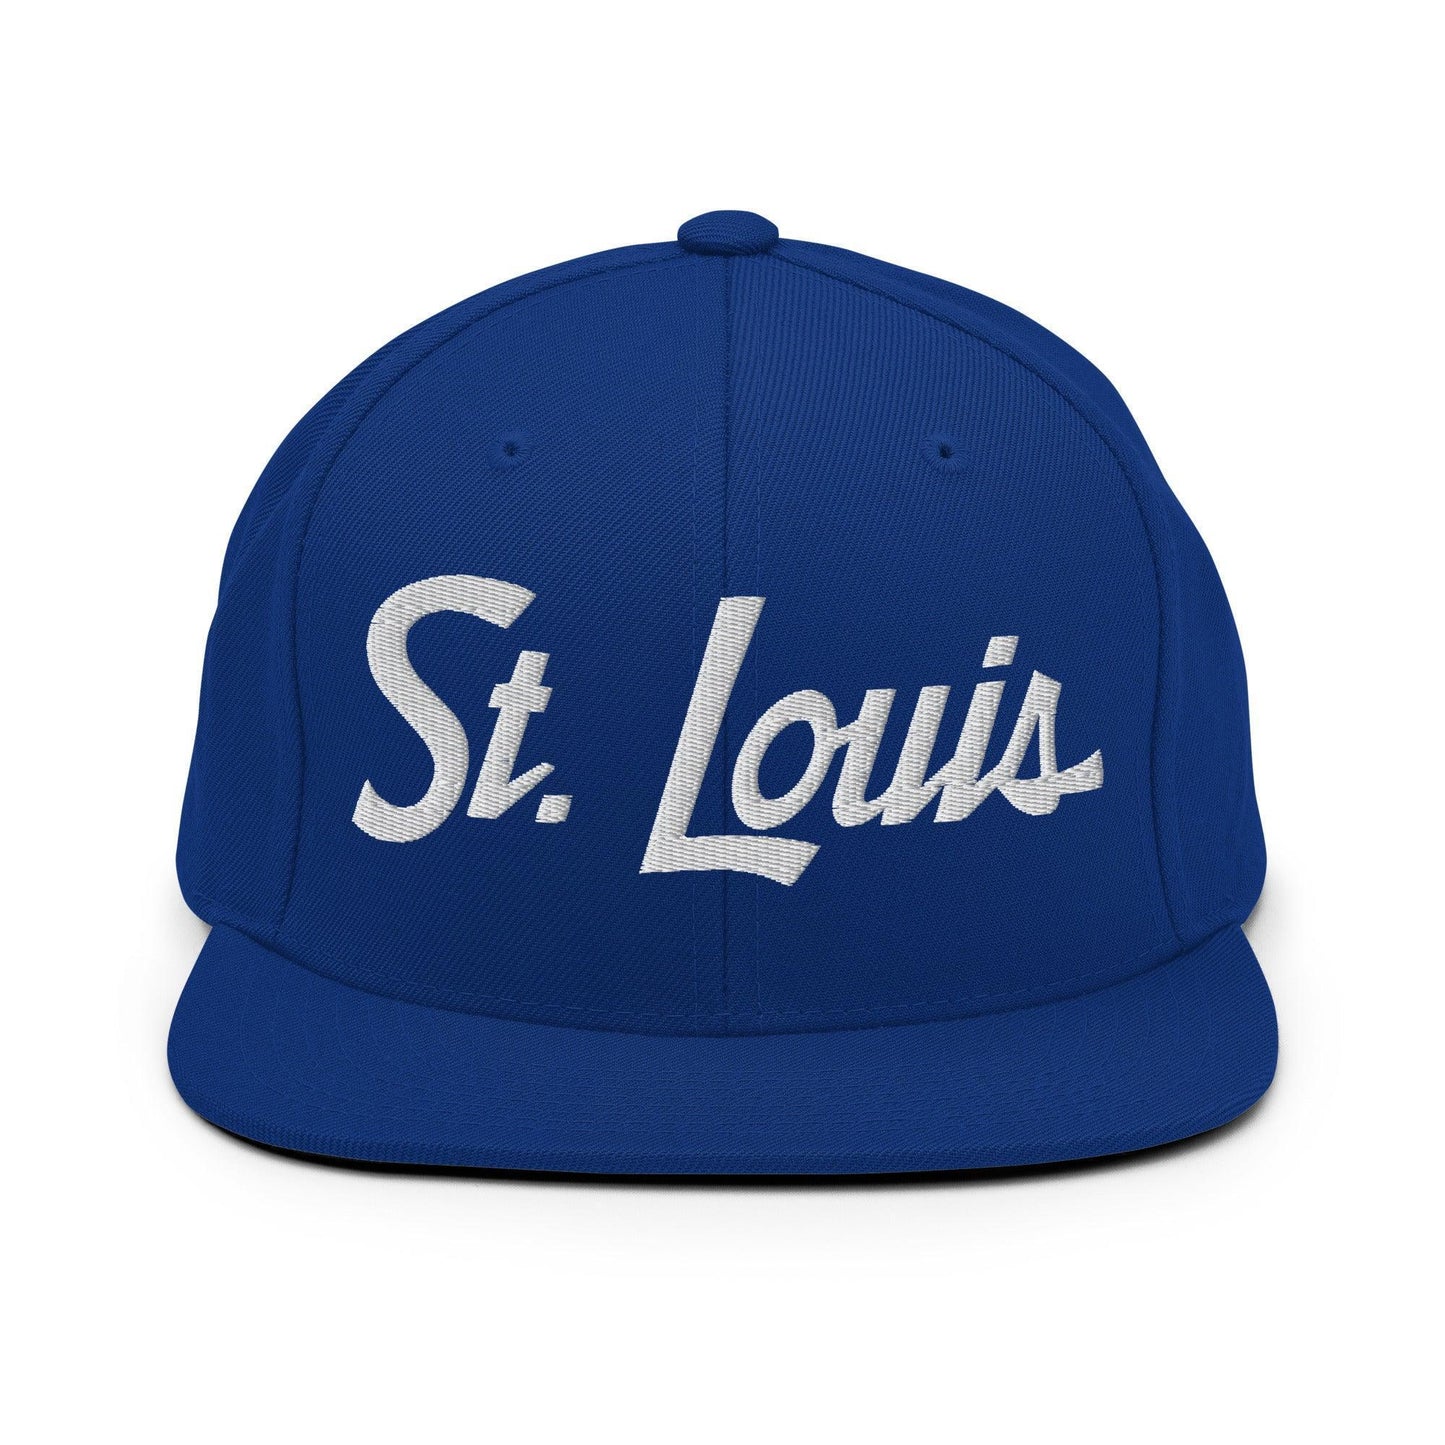 St. Louis Script Snapback Hat Royal Blue